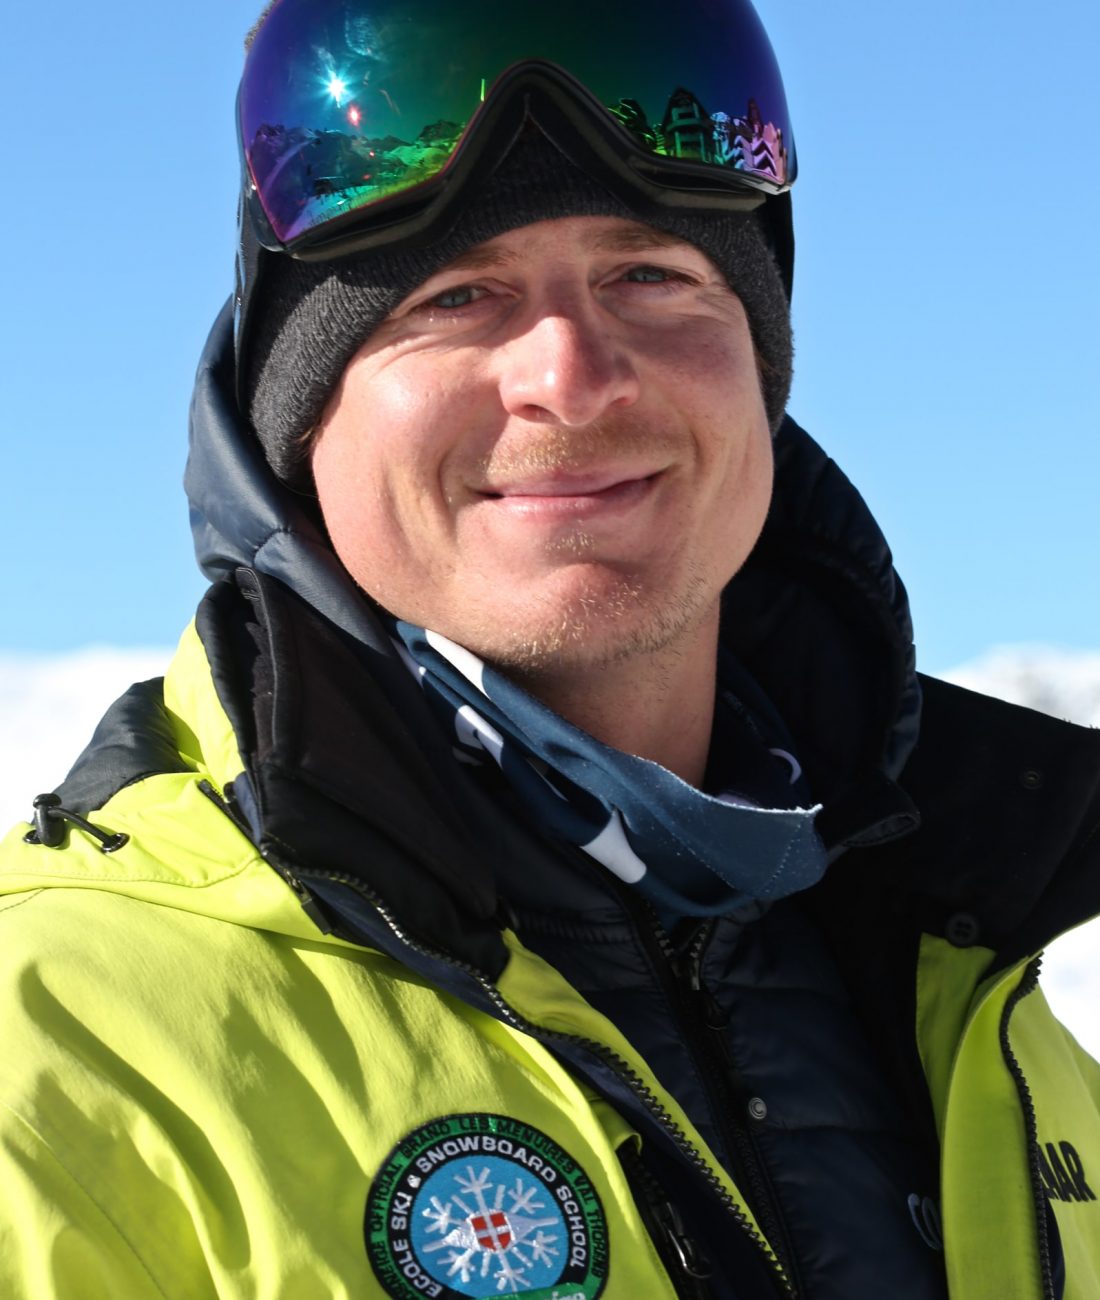 Pierre-moniteur-ski-prosneige